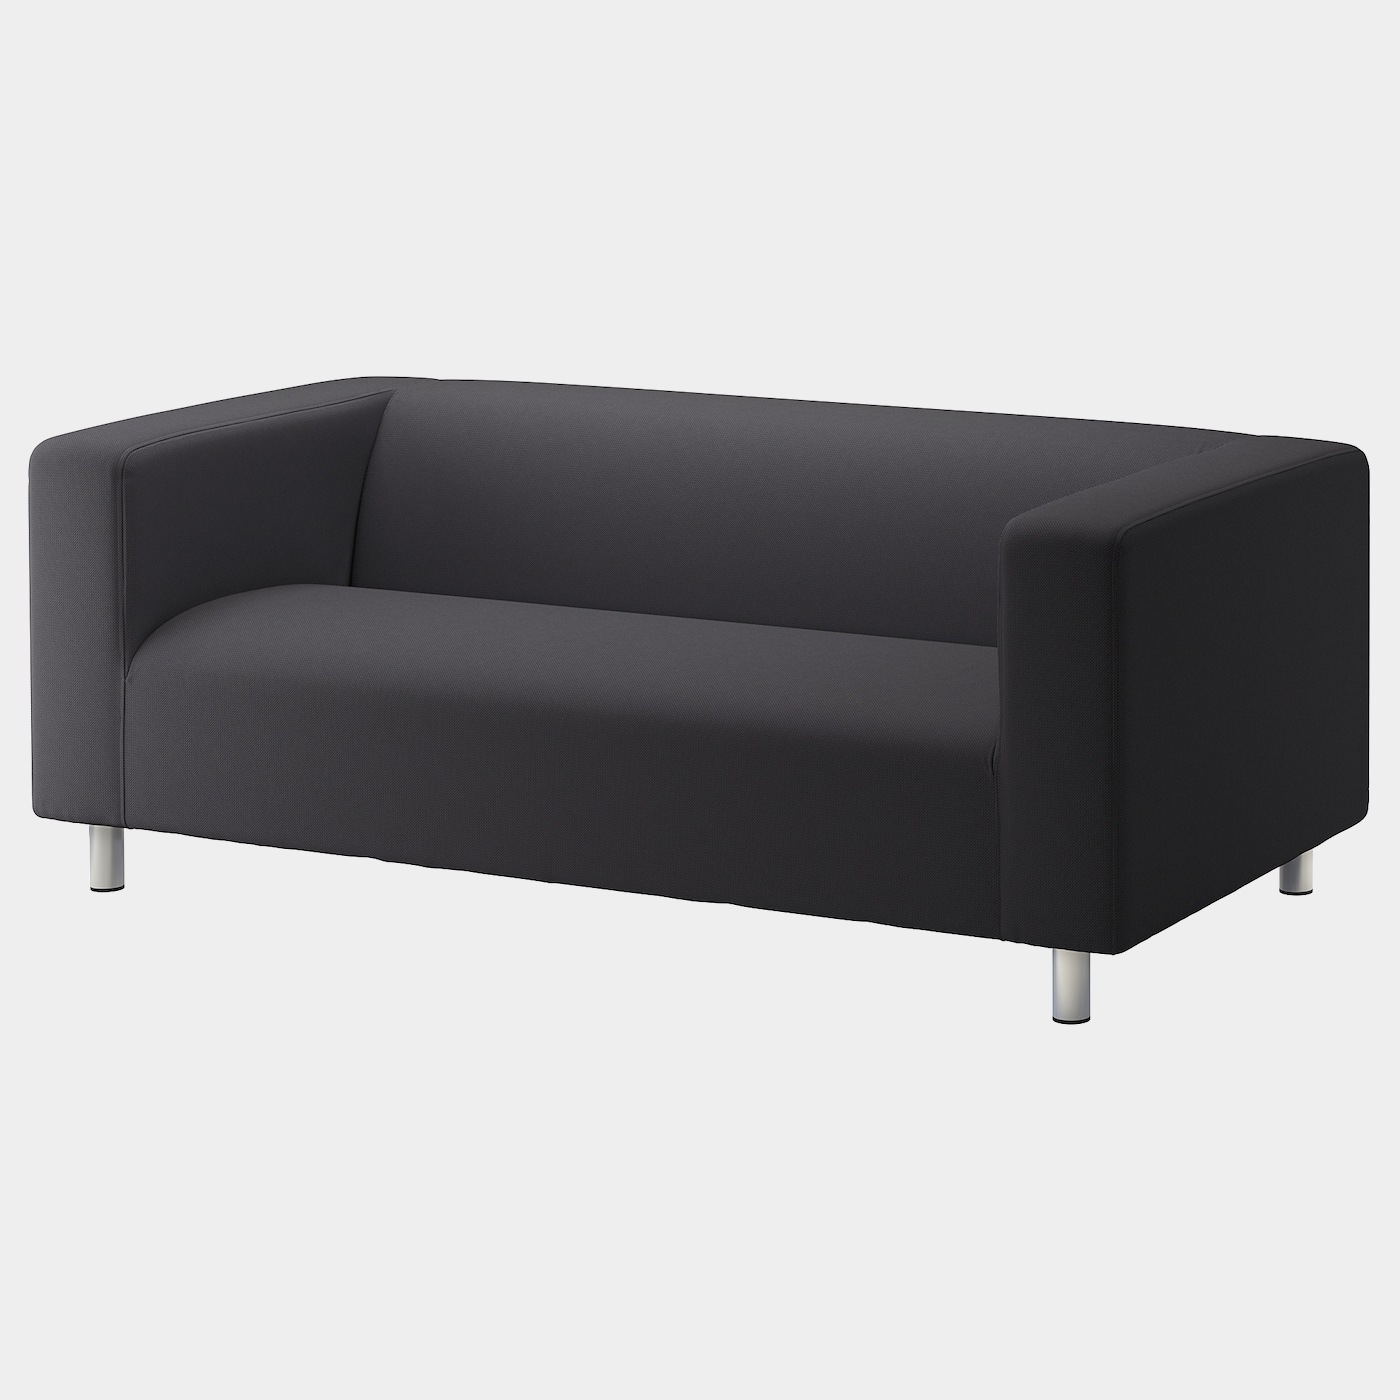 KLIPPAN Bezug 2er-Sofa  - extra Bezüge - Möbel Ideen für dein Zuhause von Home Trends. Möbel Trends von Social Media Influencer für dein Skandi Zuhause.